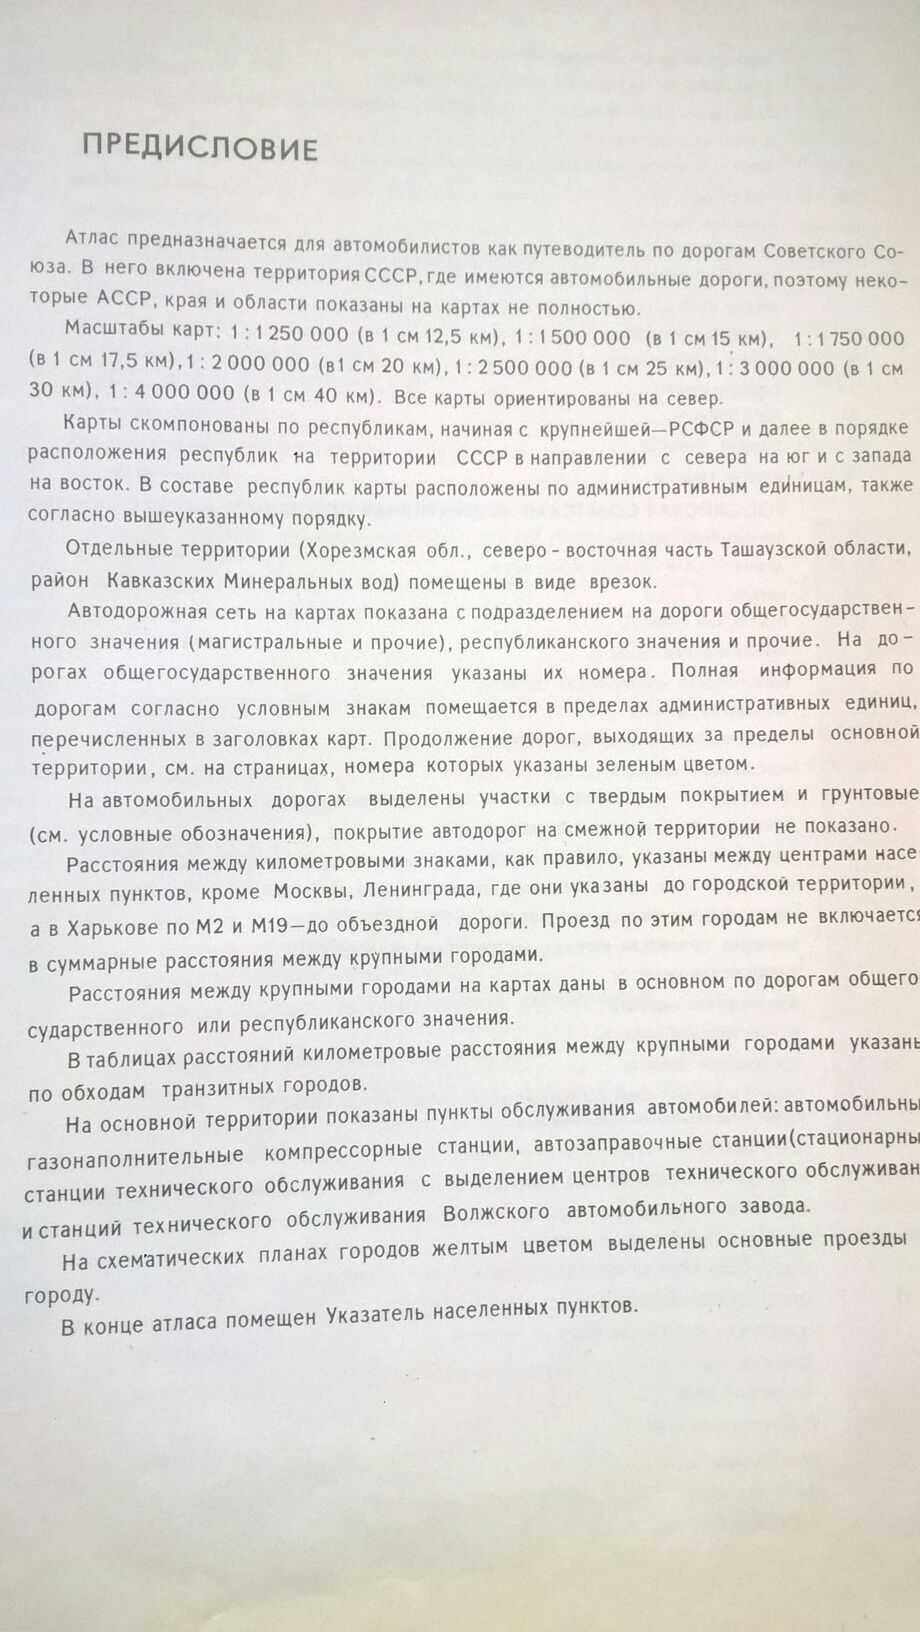 Атлас автомобильных дорог 175 страниц, СССР,МОСКВА